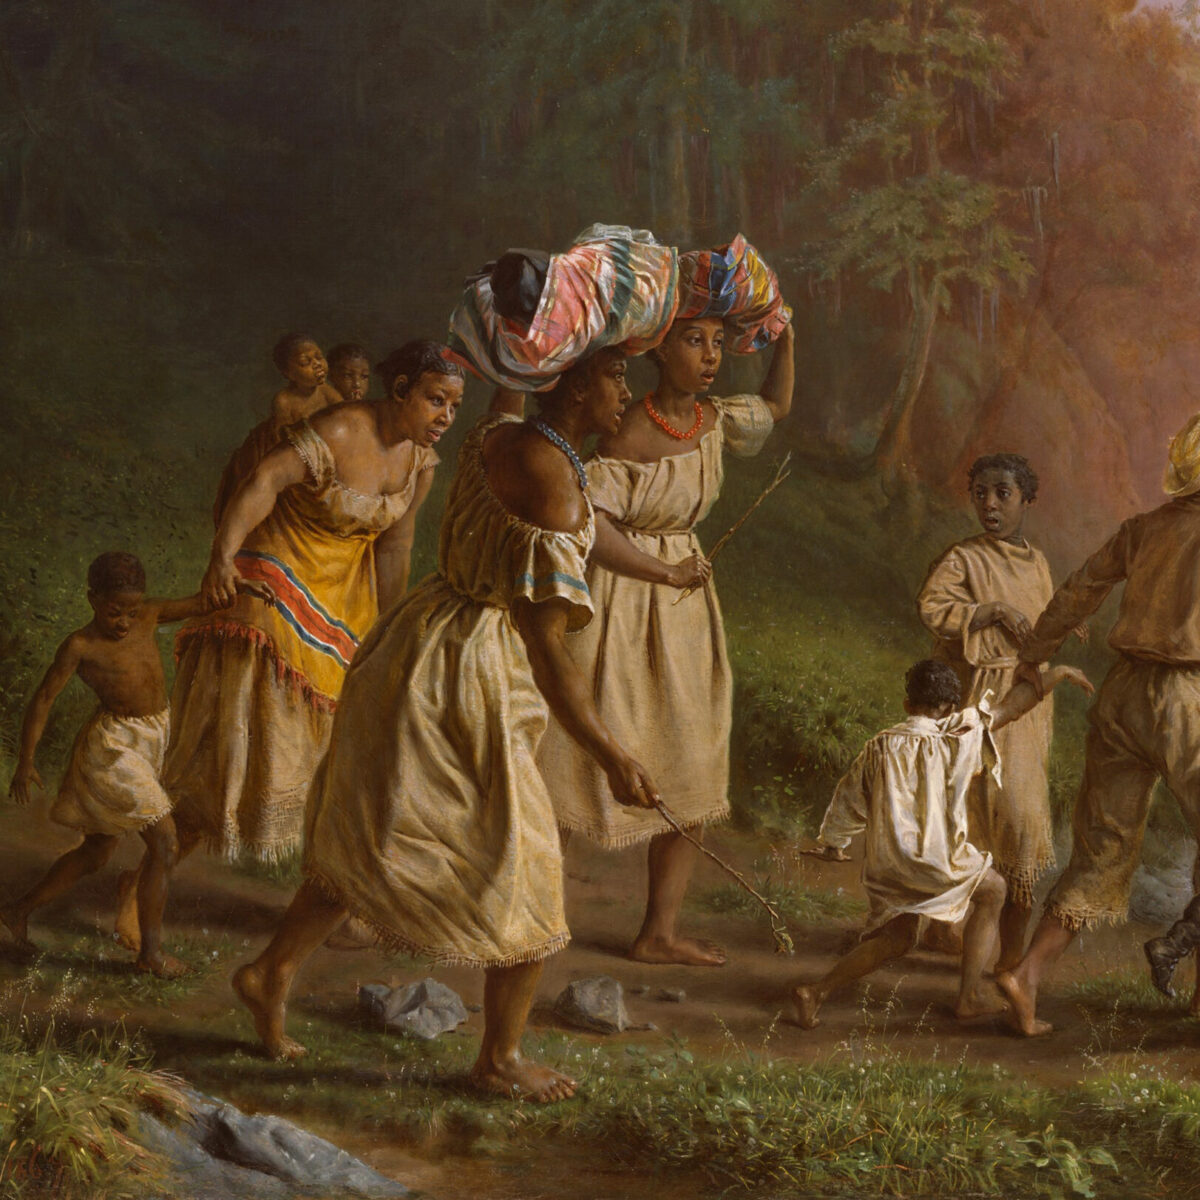 Group of enslaved people fleeing